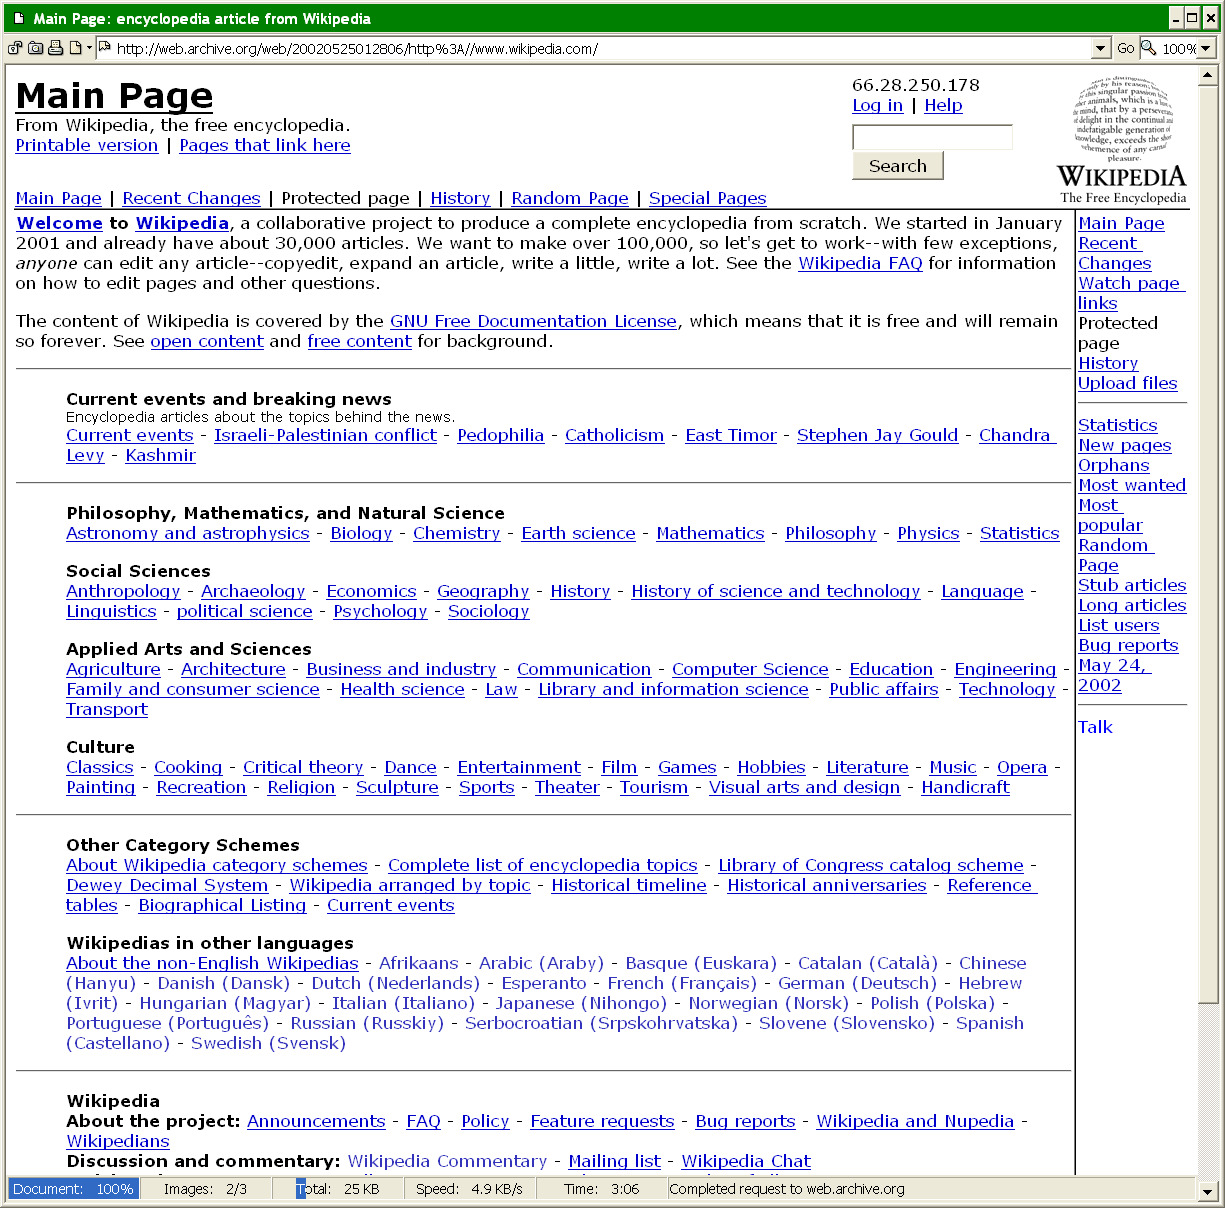 Wikipedia_Screenshot_2002-05-25.png